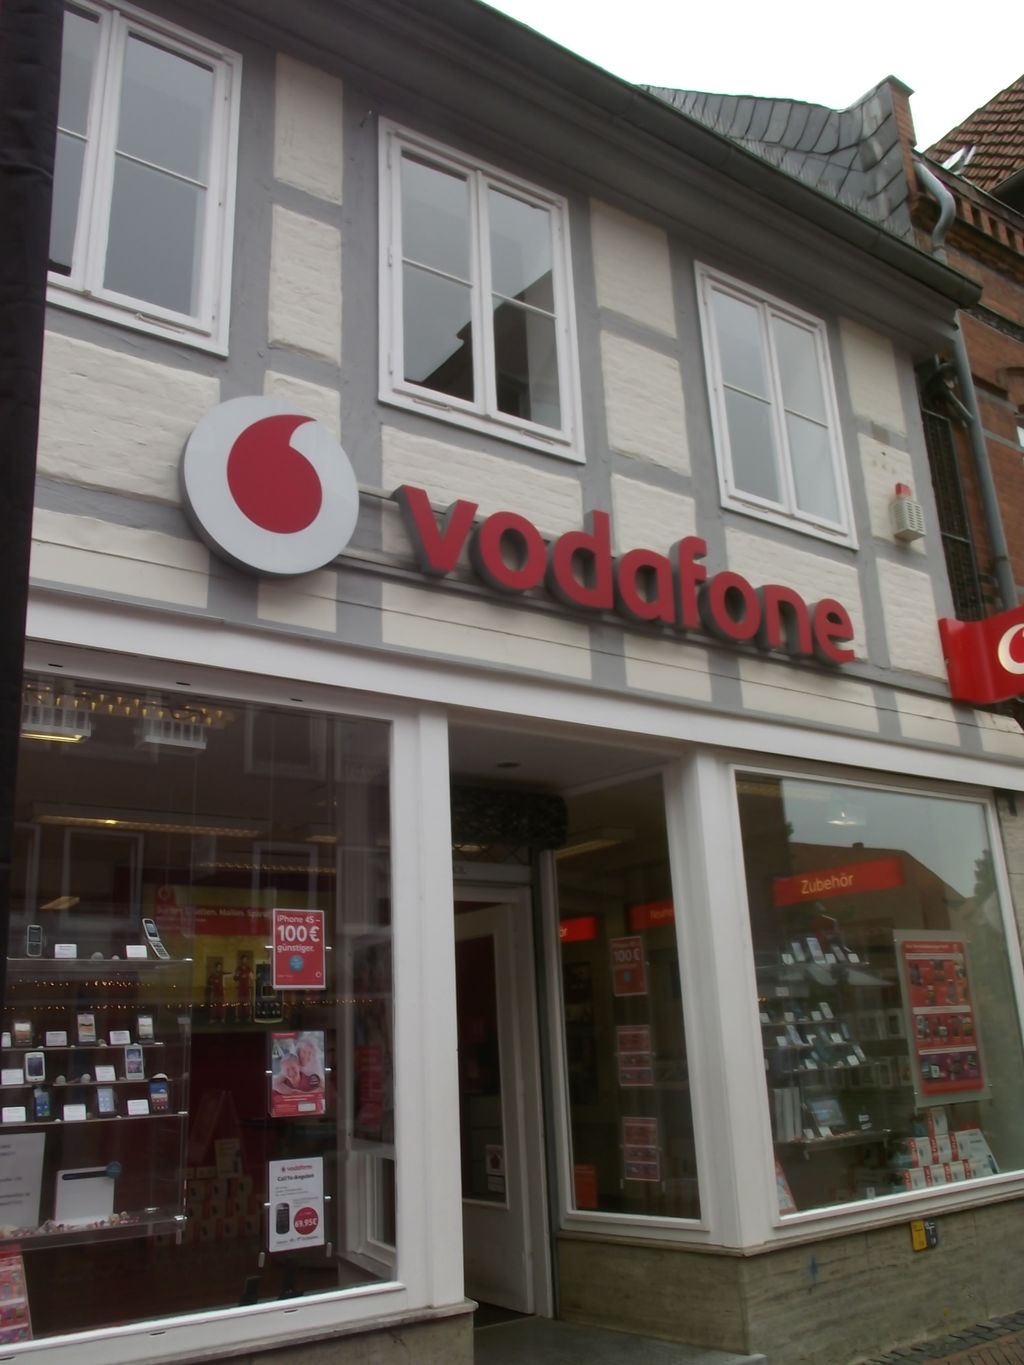 Nutzerfoto 1 Vodafone Shop